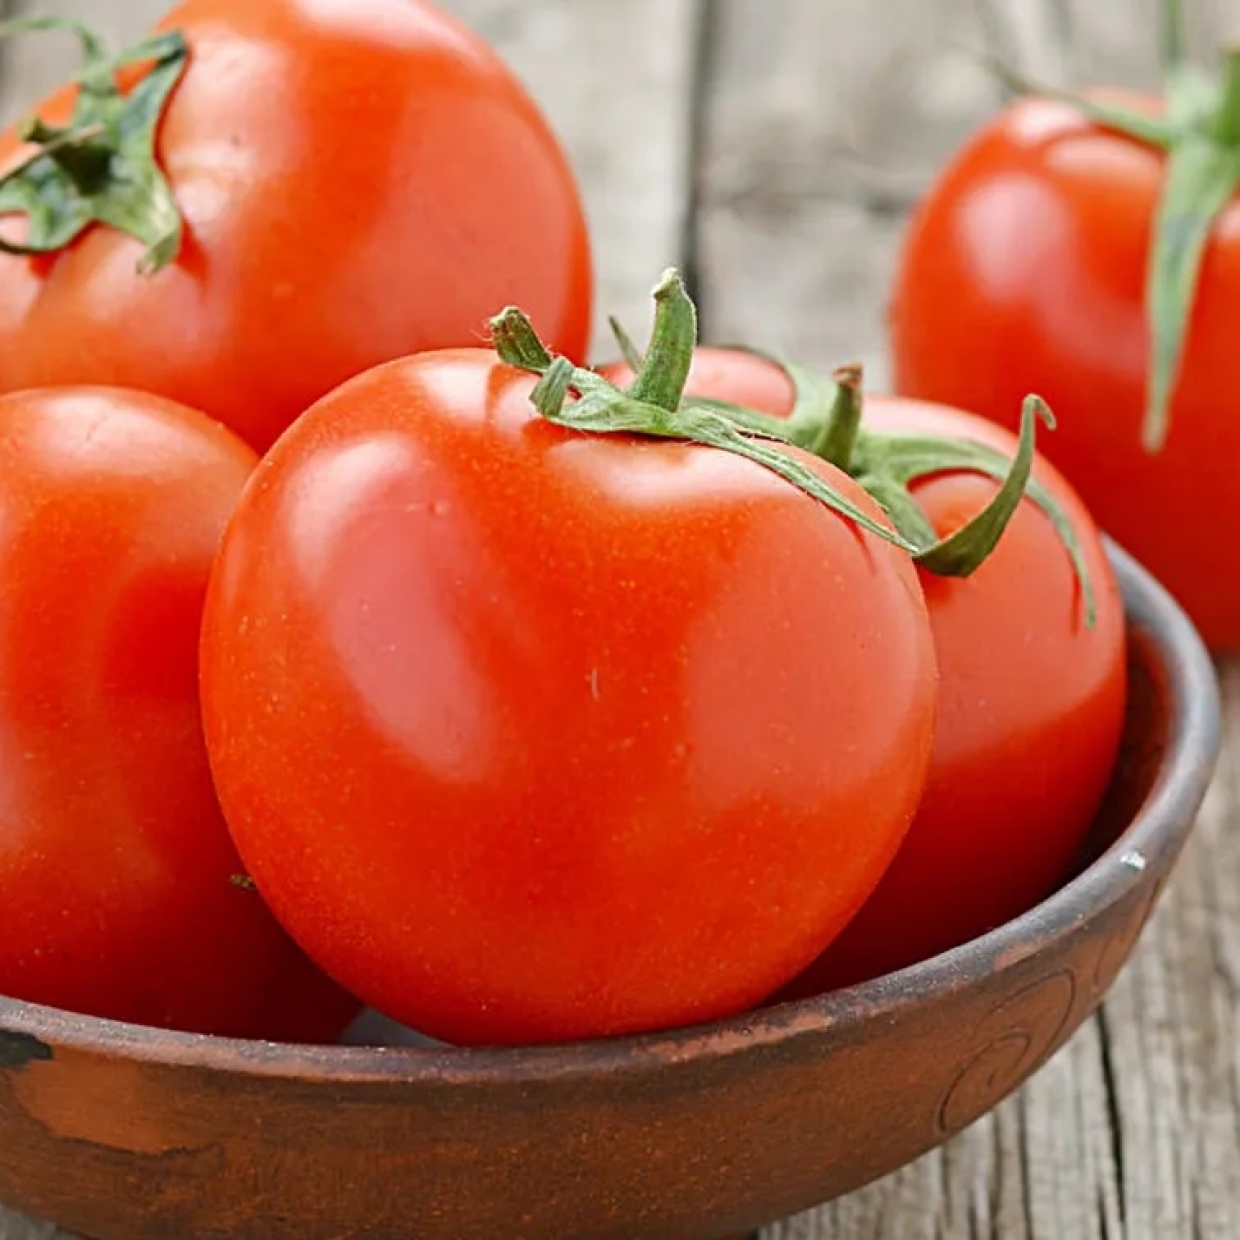  トマトの栄養「リコピン」を効率良く摂る方法！「おすすめは朝or夜？」「生がいいの？」 